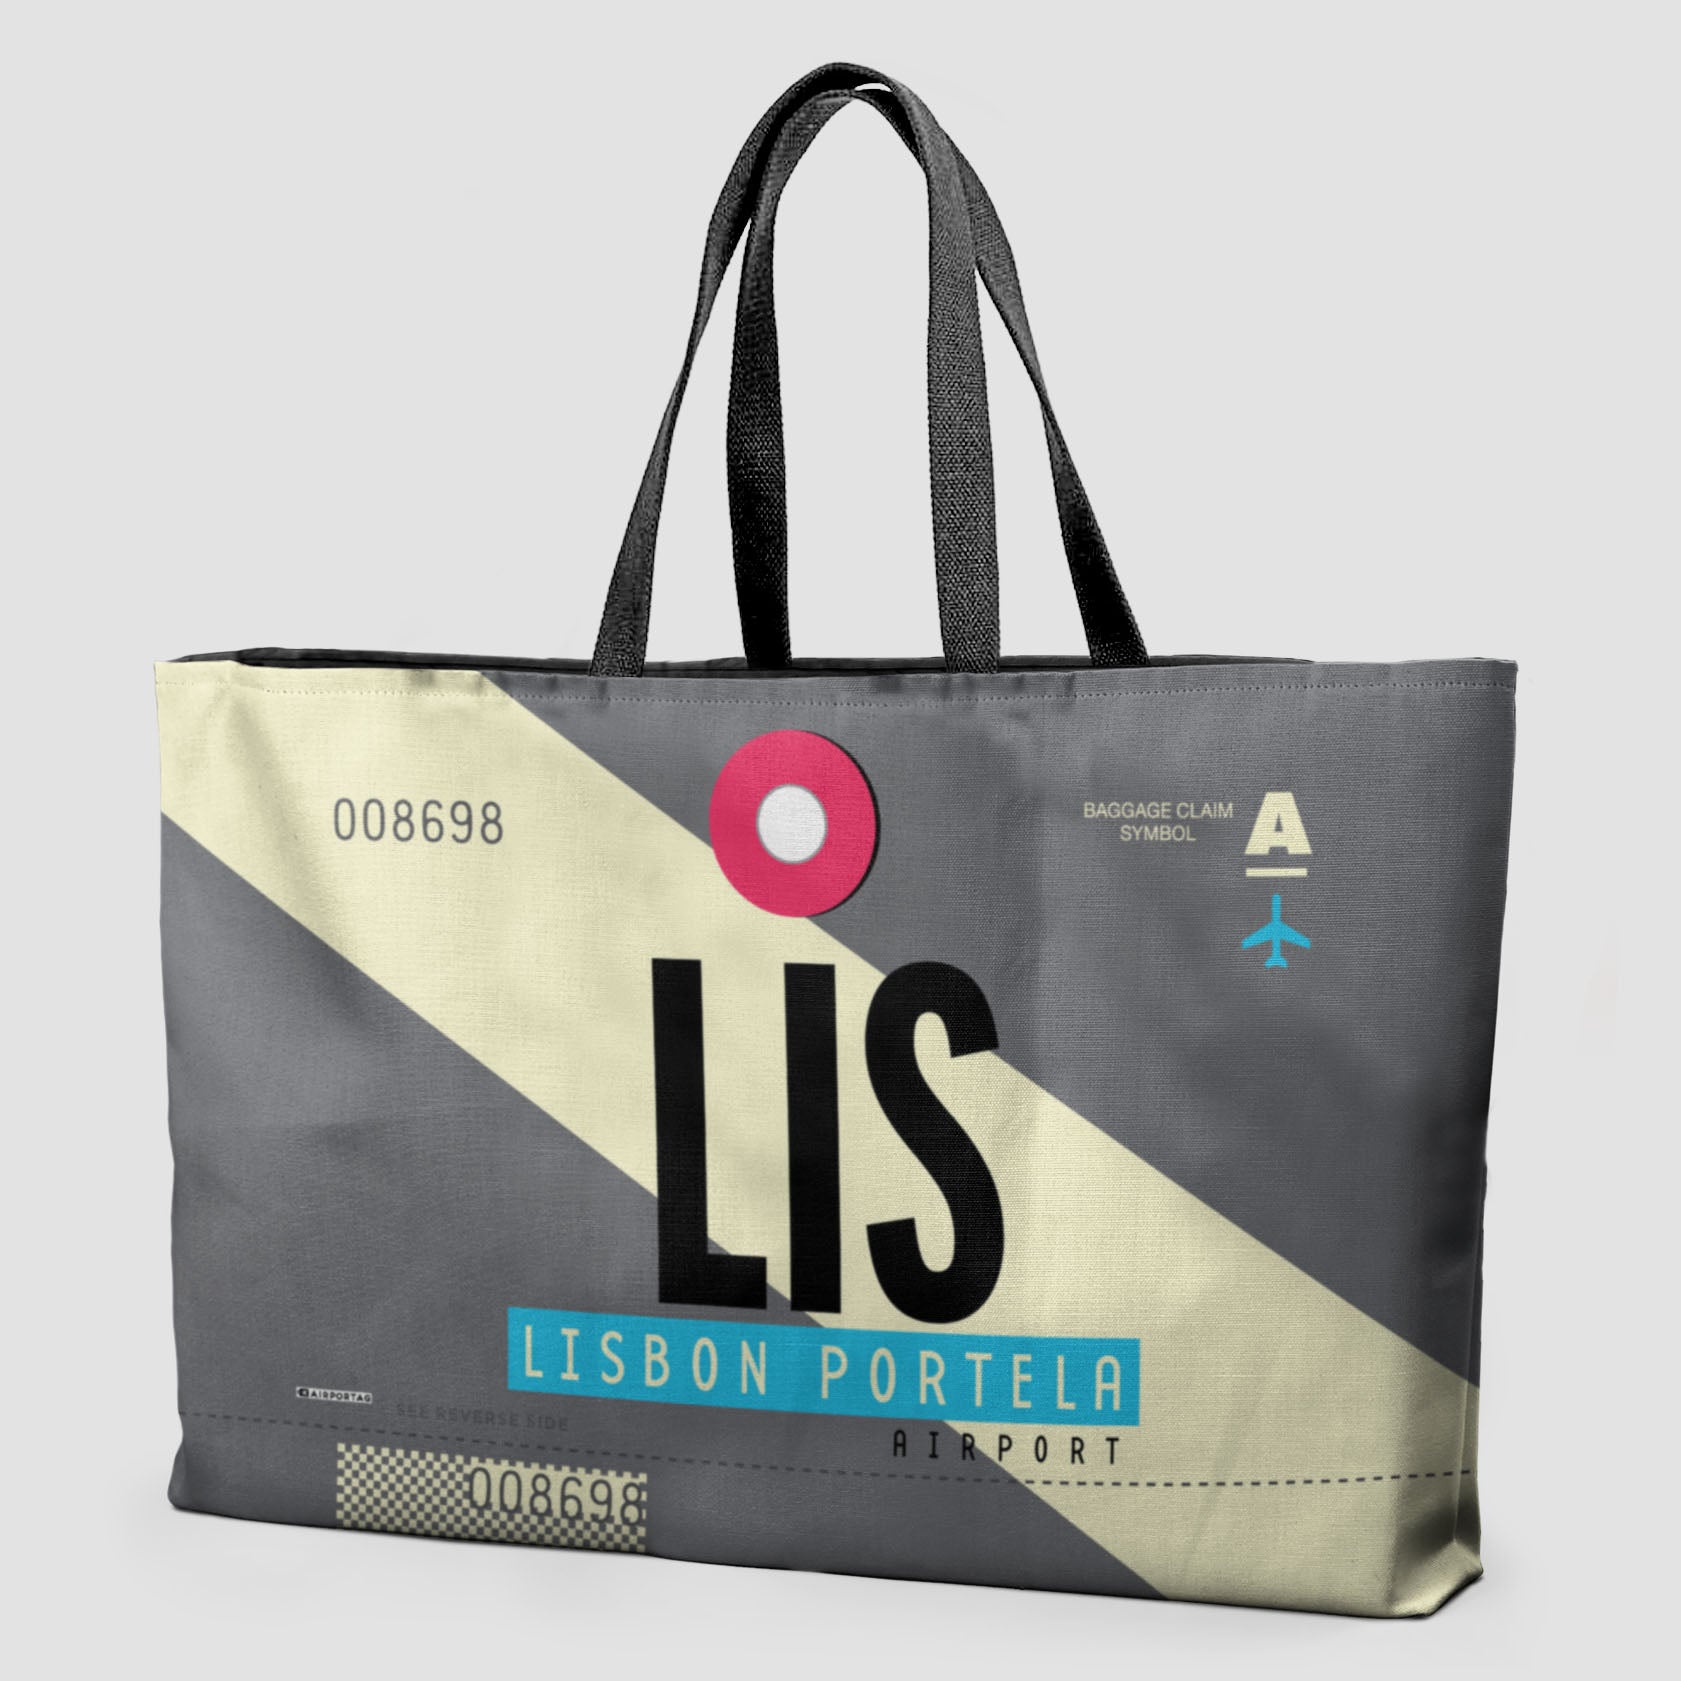 LIS - Weekender Bag - Airportag